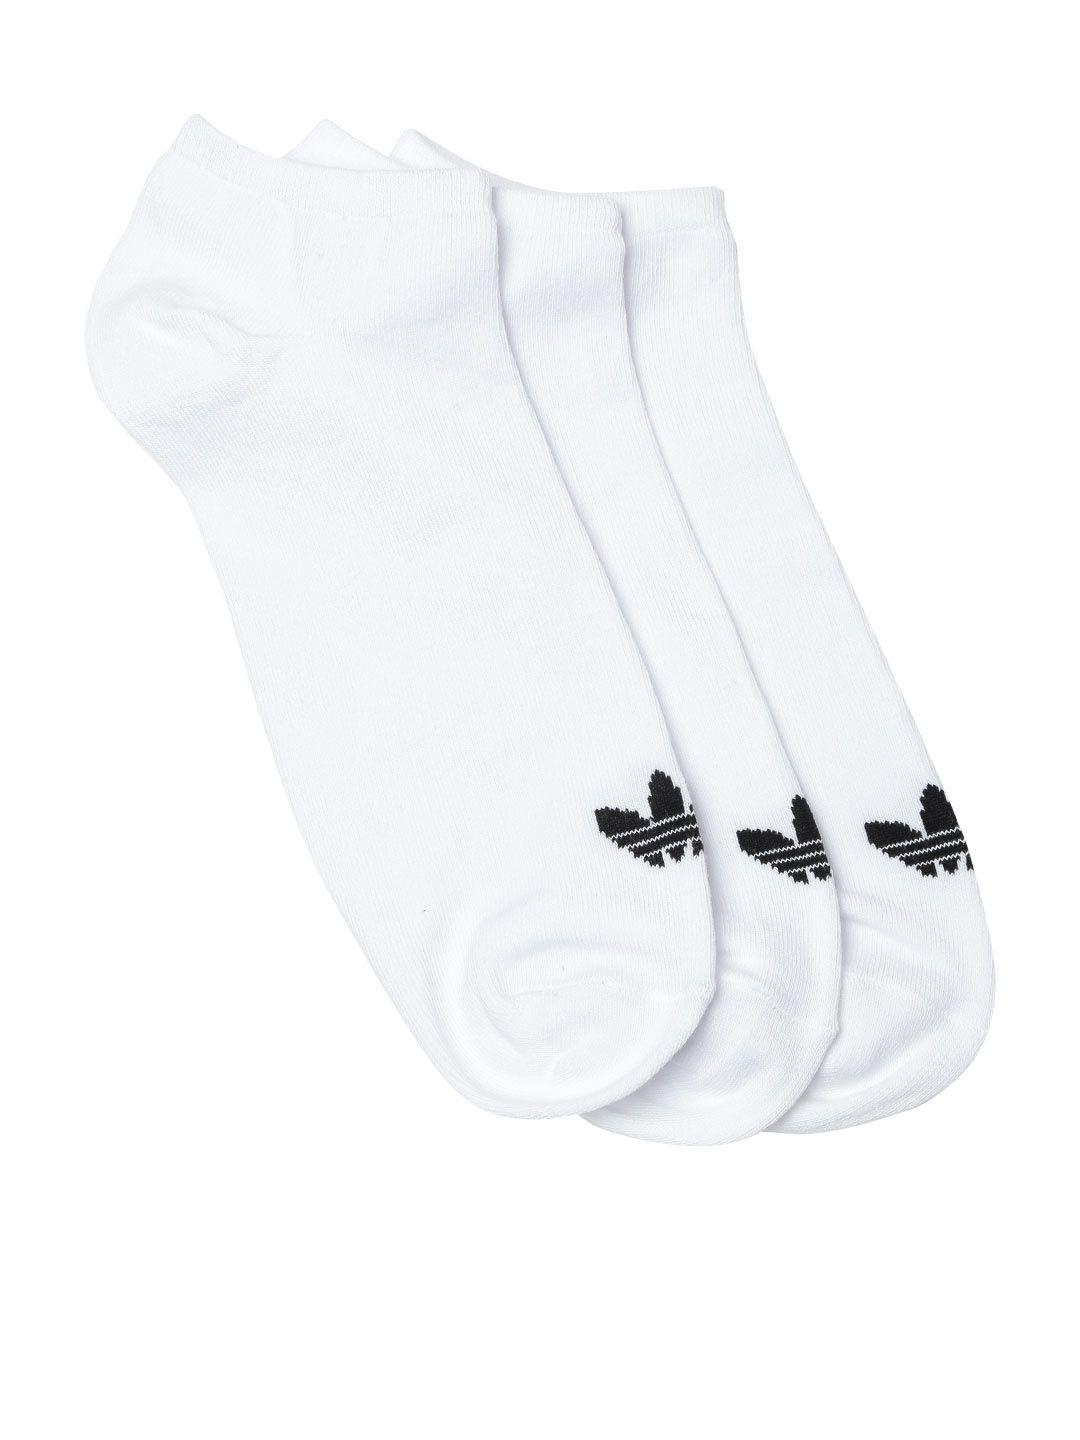 adidas-originals-unisex-pack-of-3-white-trefoil-liner-ankle-length-socks